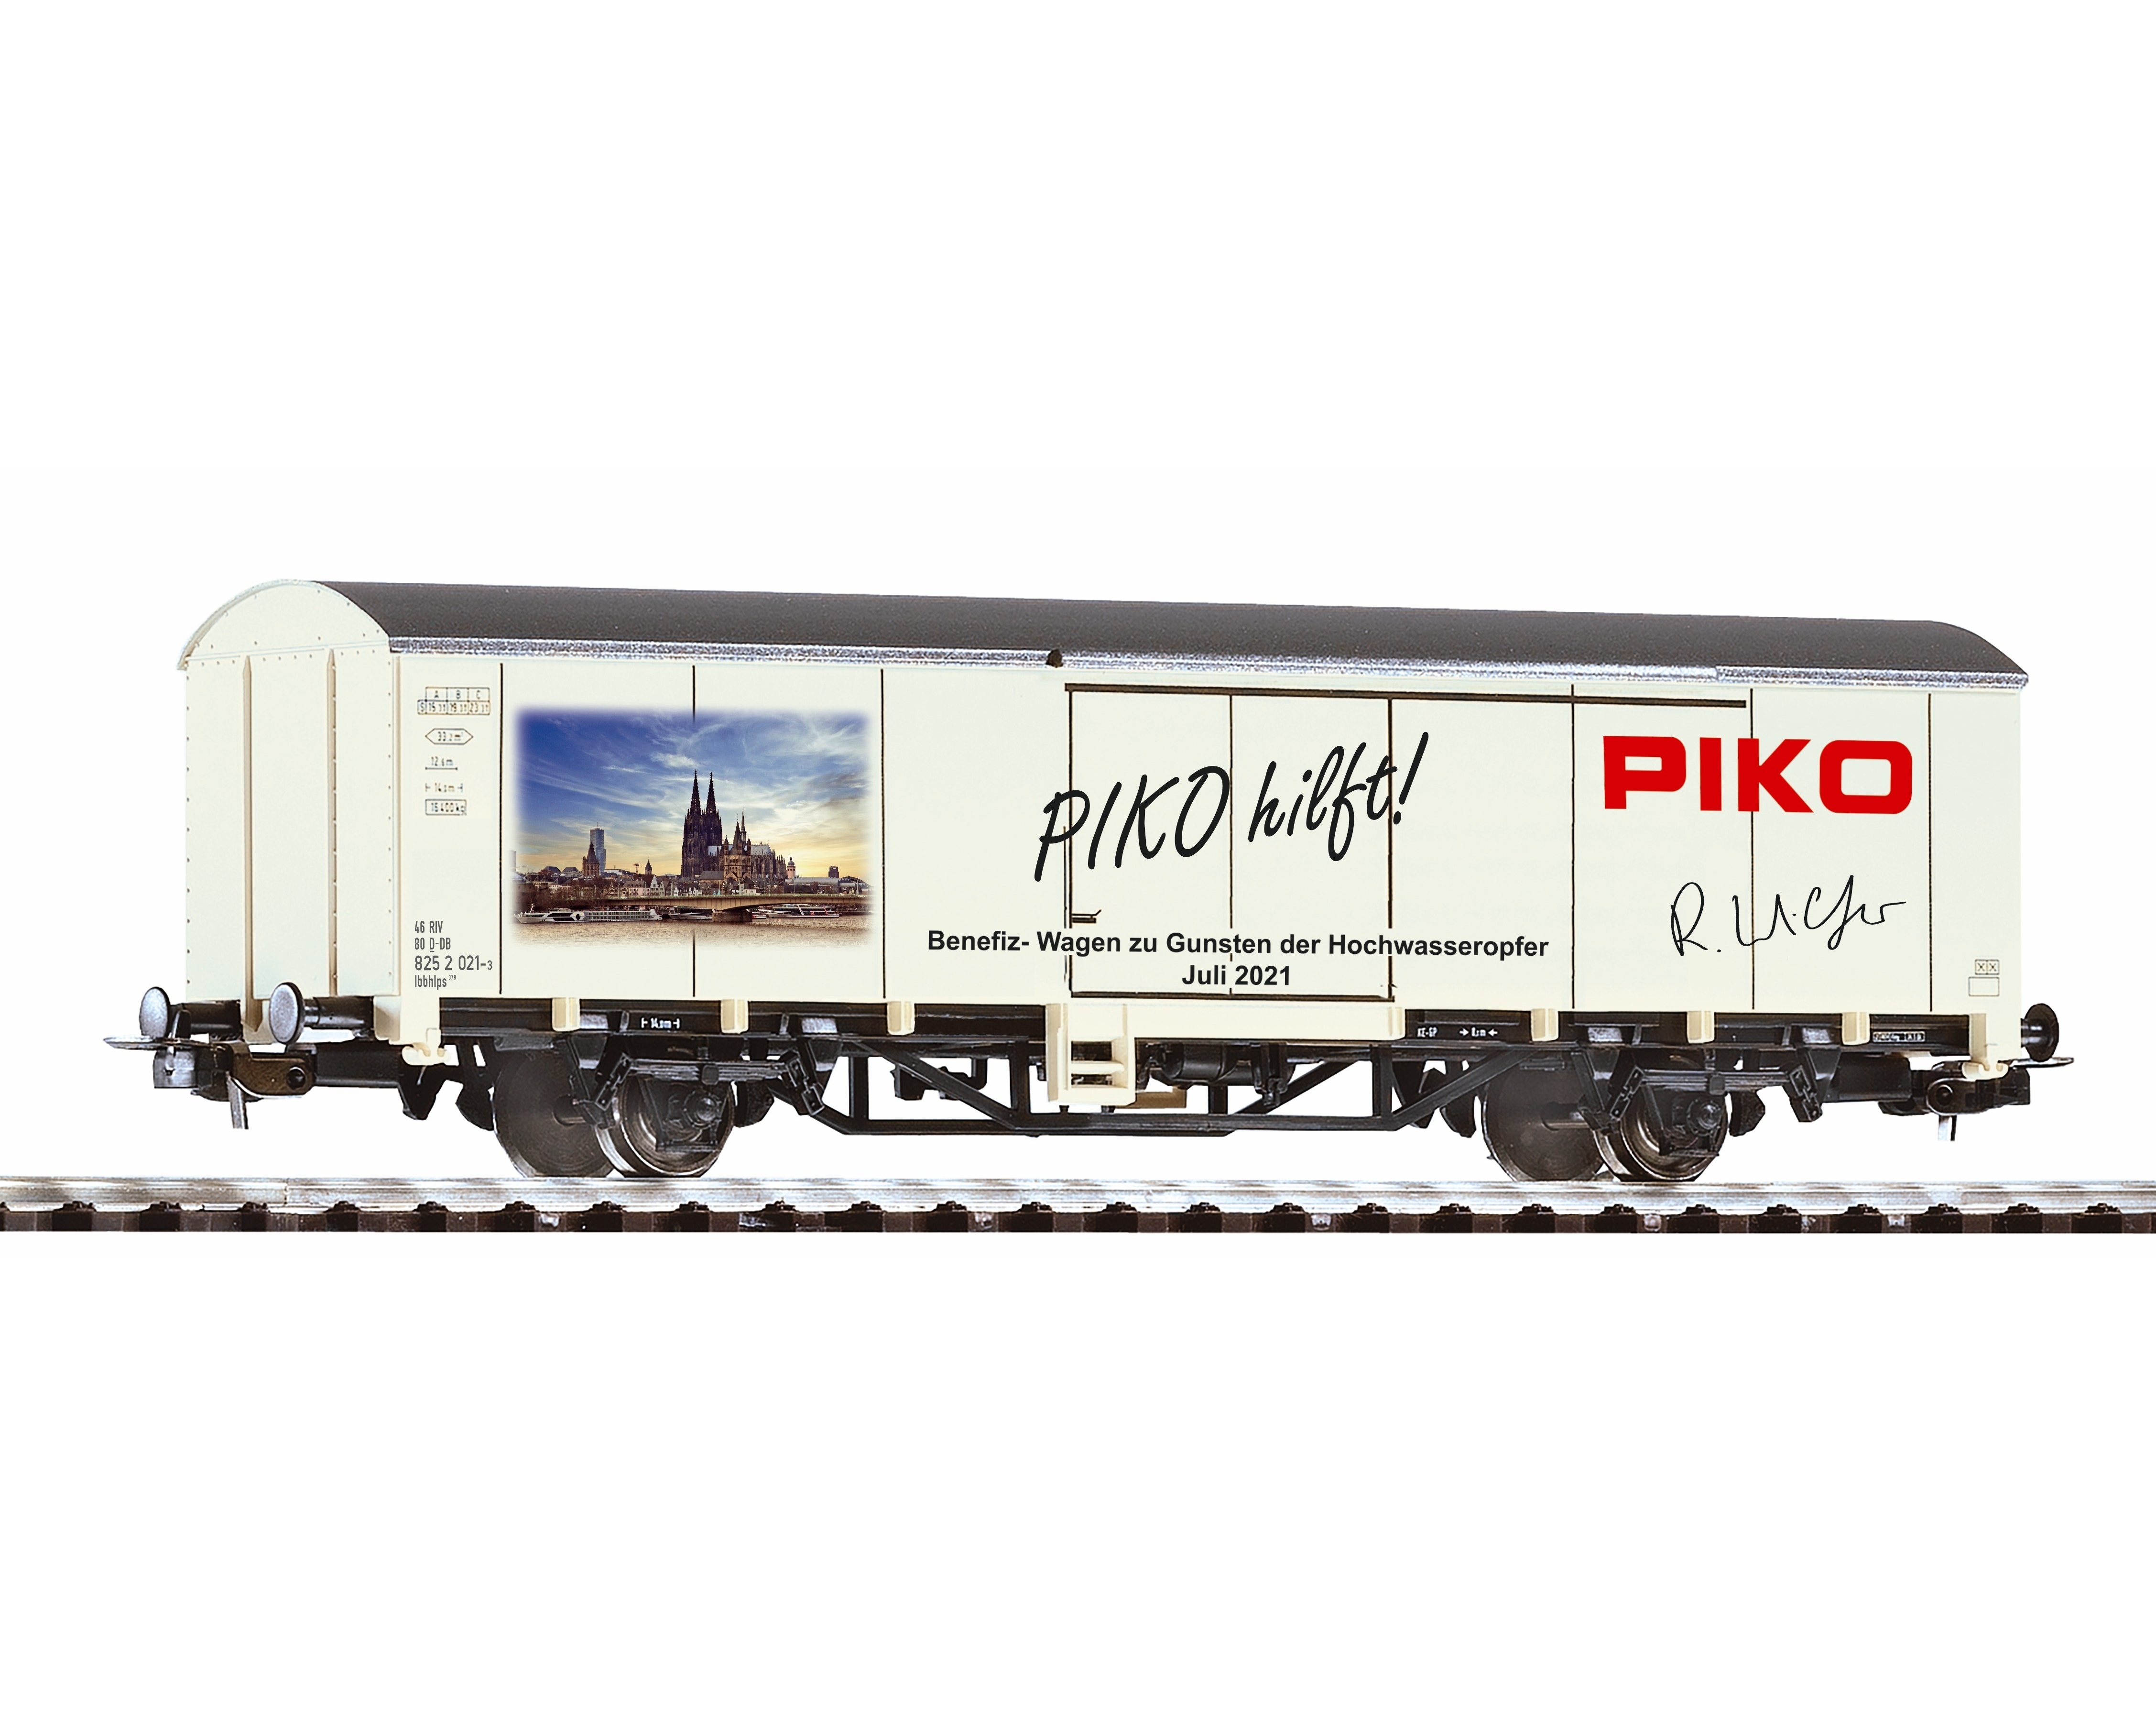 Piko 72217 - PIKO HILFT WAGEN 2021